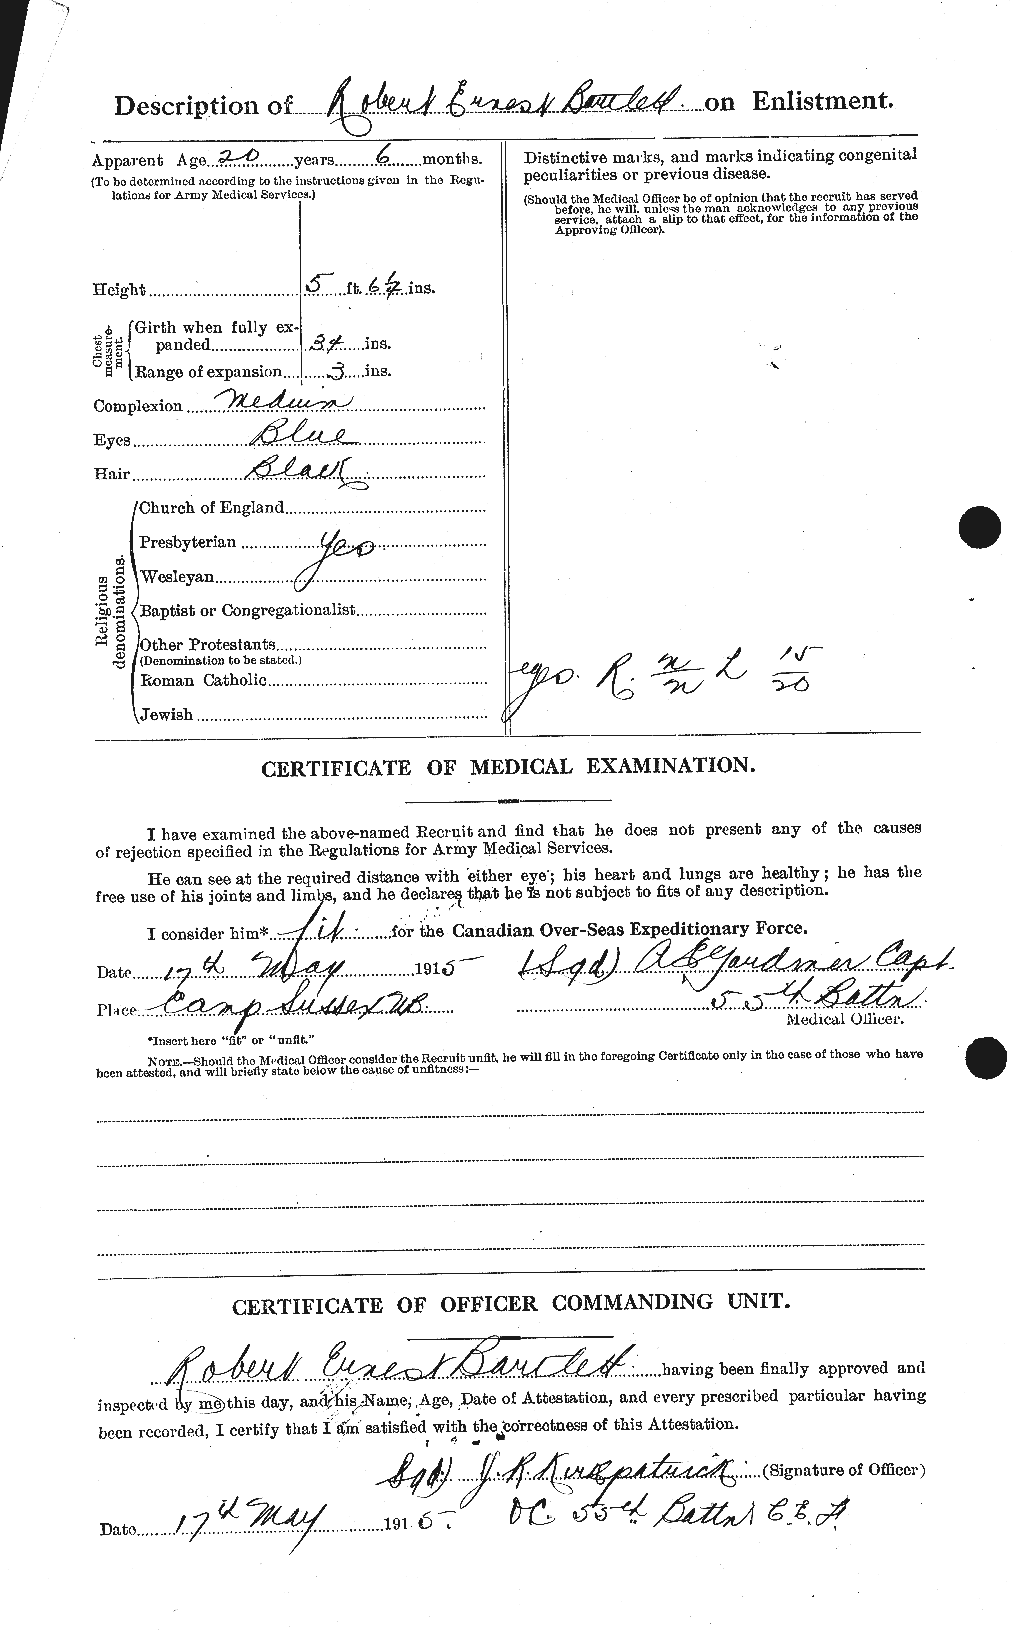 Dossiers du Personnel de la Première Guerre mondiale - CEC 229317b